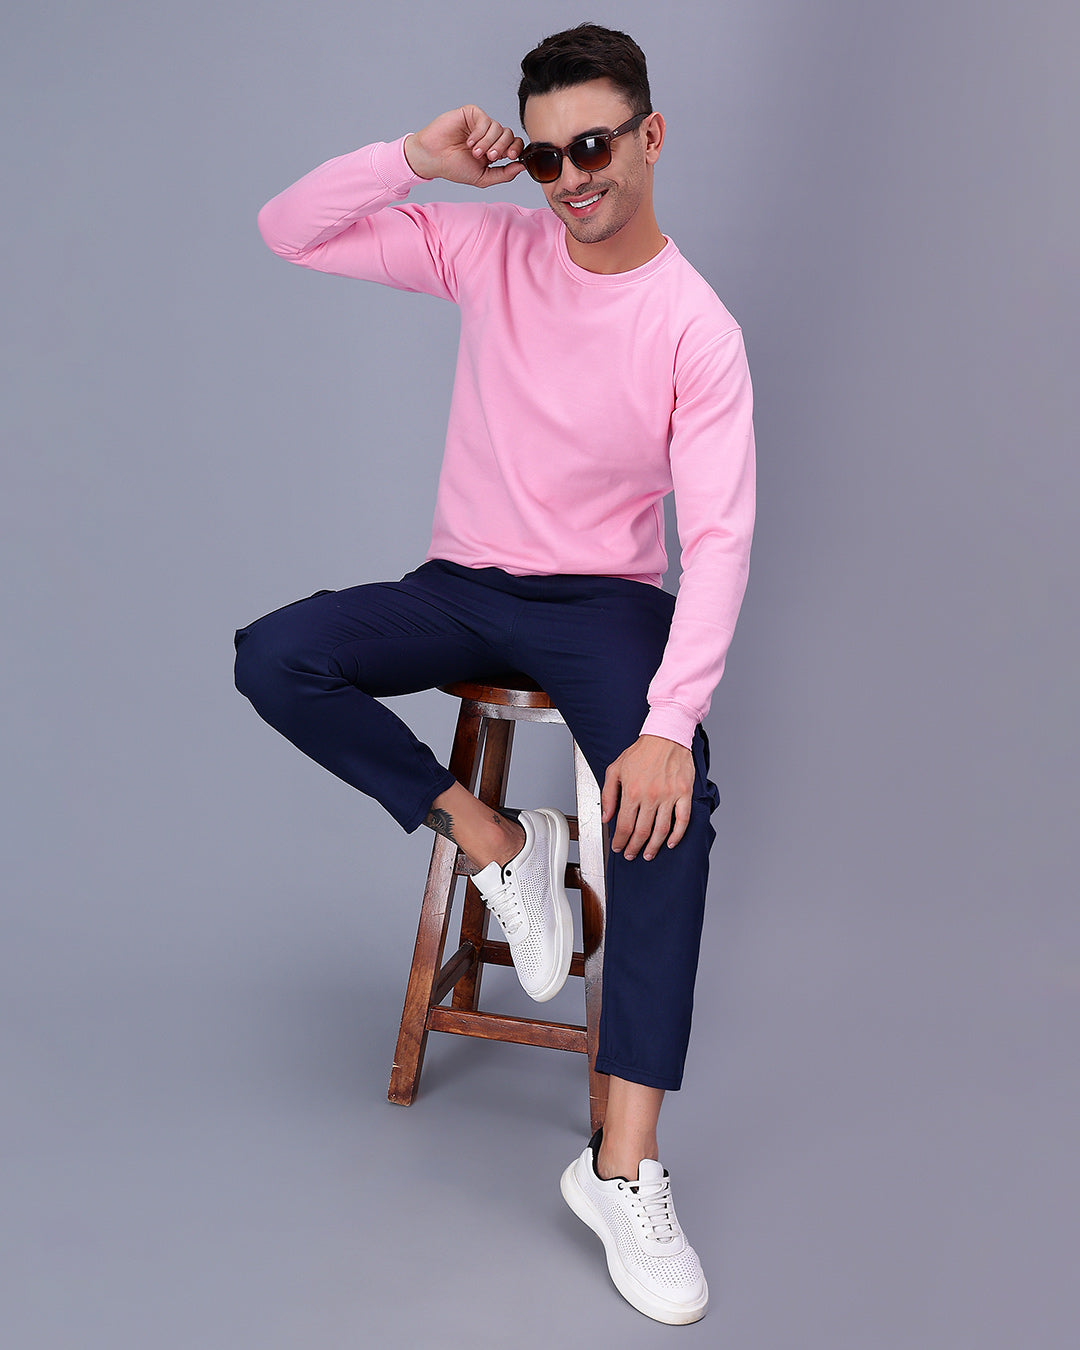 Pink Solid Men Sweatshirt